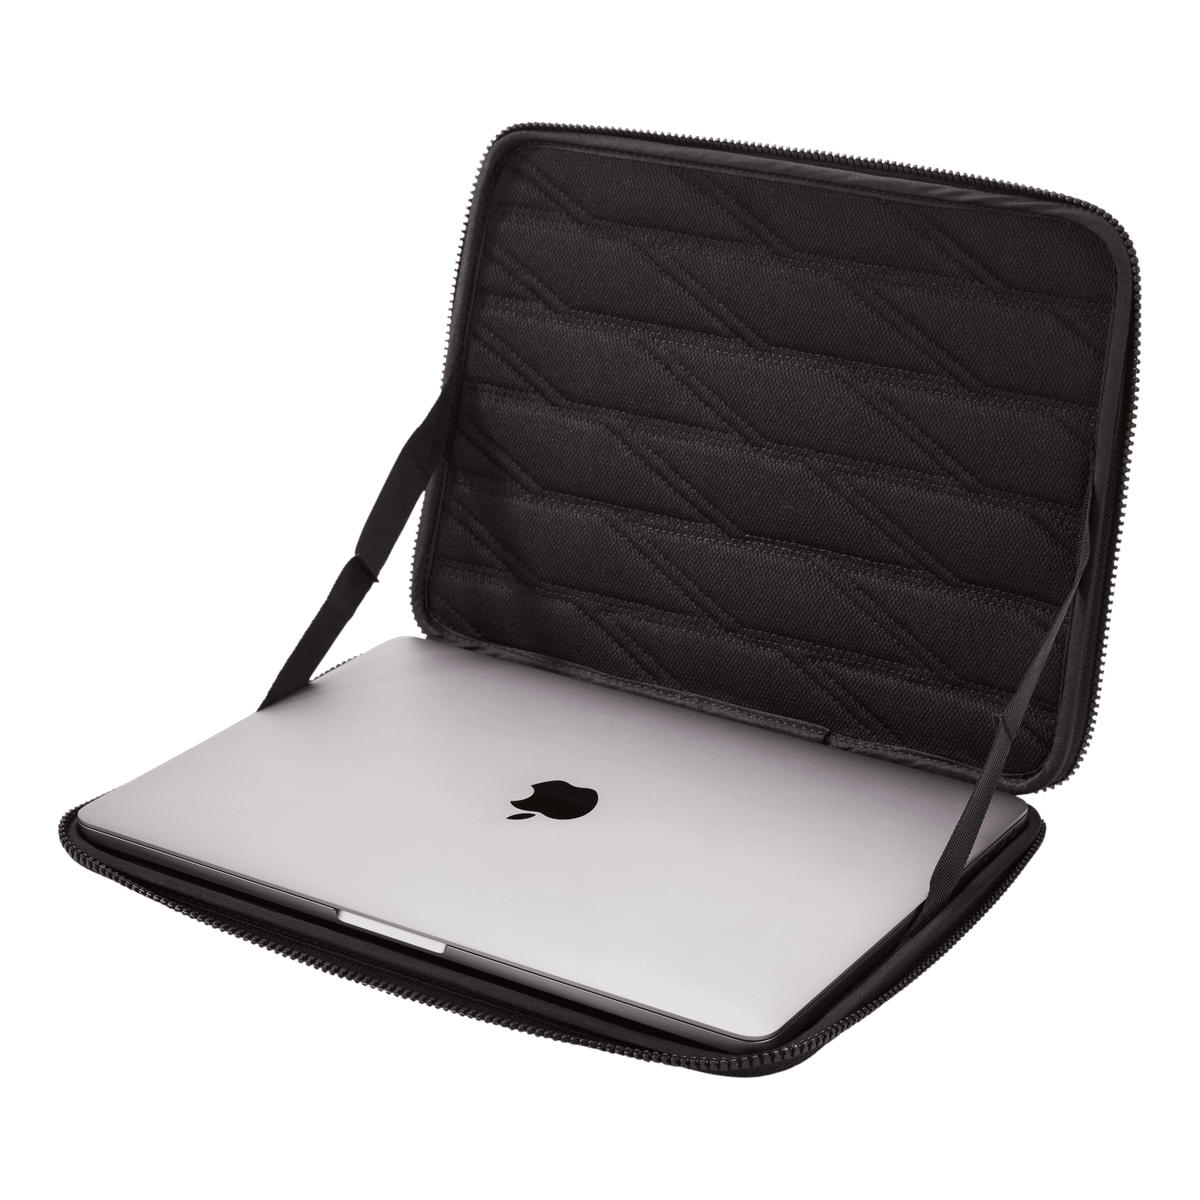 Thule Gauntlet sleeve MacBook® 13" black